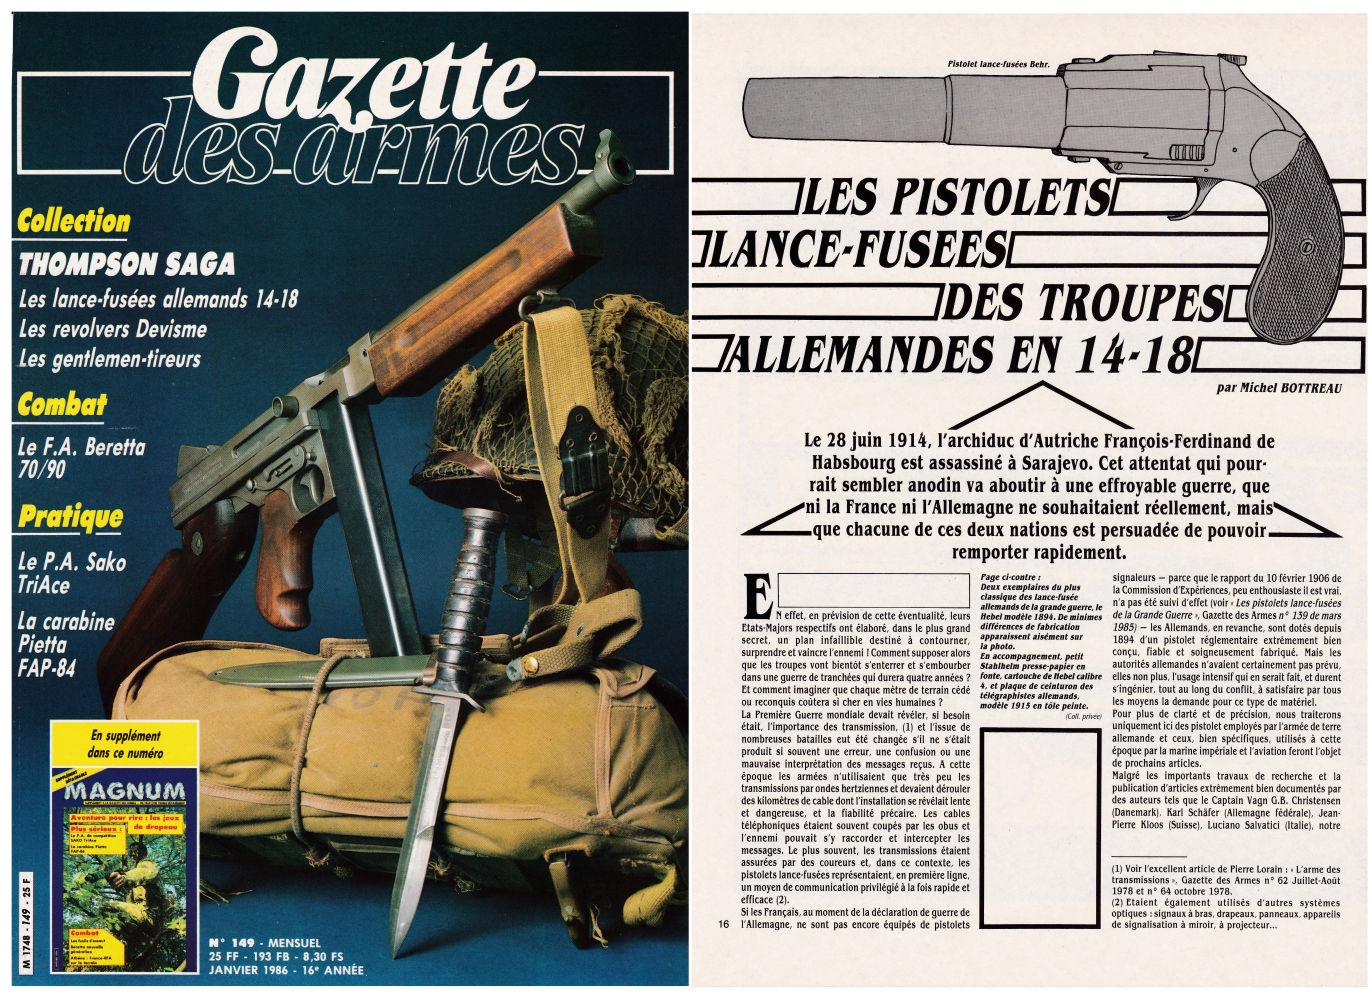 Les pistolets lance-fusées des troupes allemandes de 14-18 ont fait l'objet d'une publication sur 8 pages dans le magazine Gazette des Armes n°149 (janvier 1986). 